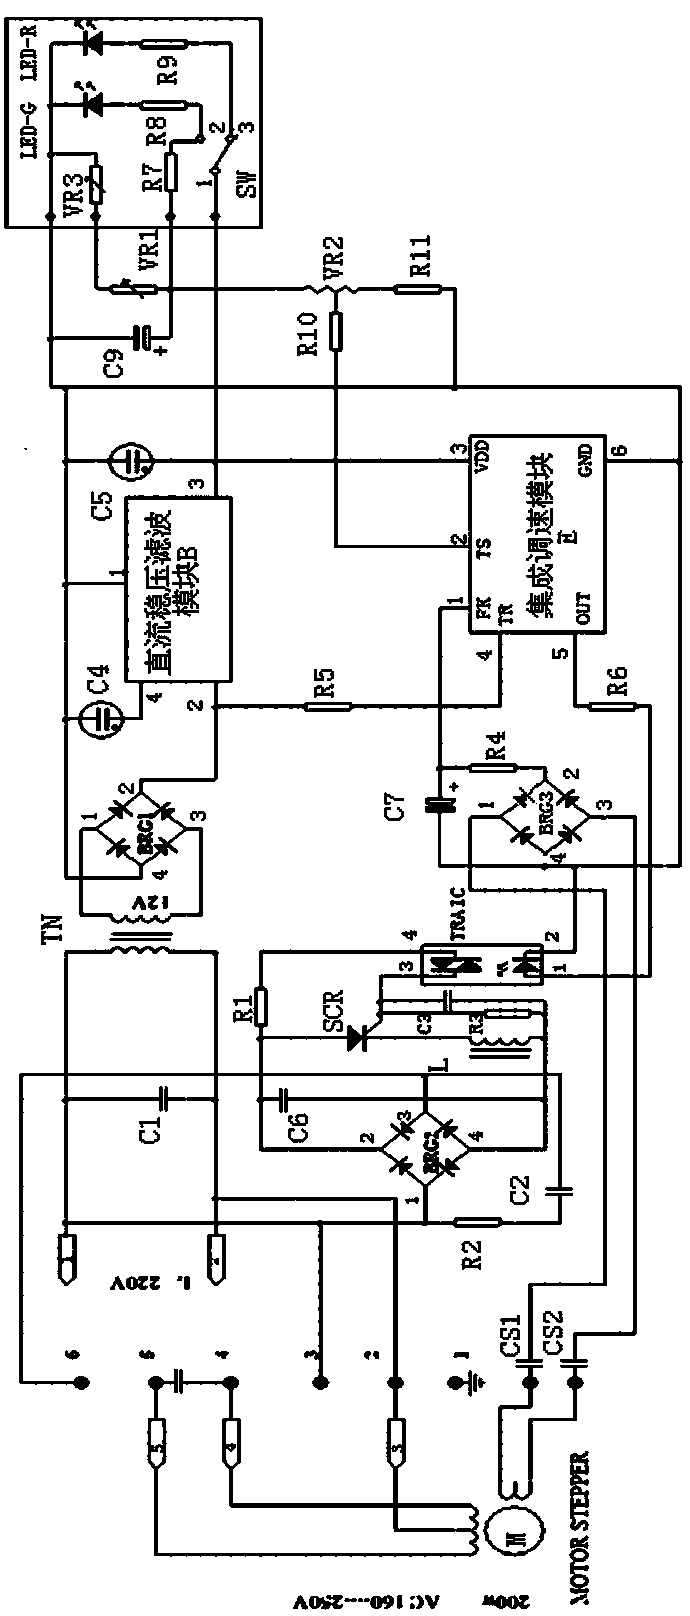 Four-isolation single-phase motor speed regulator